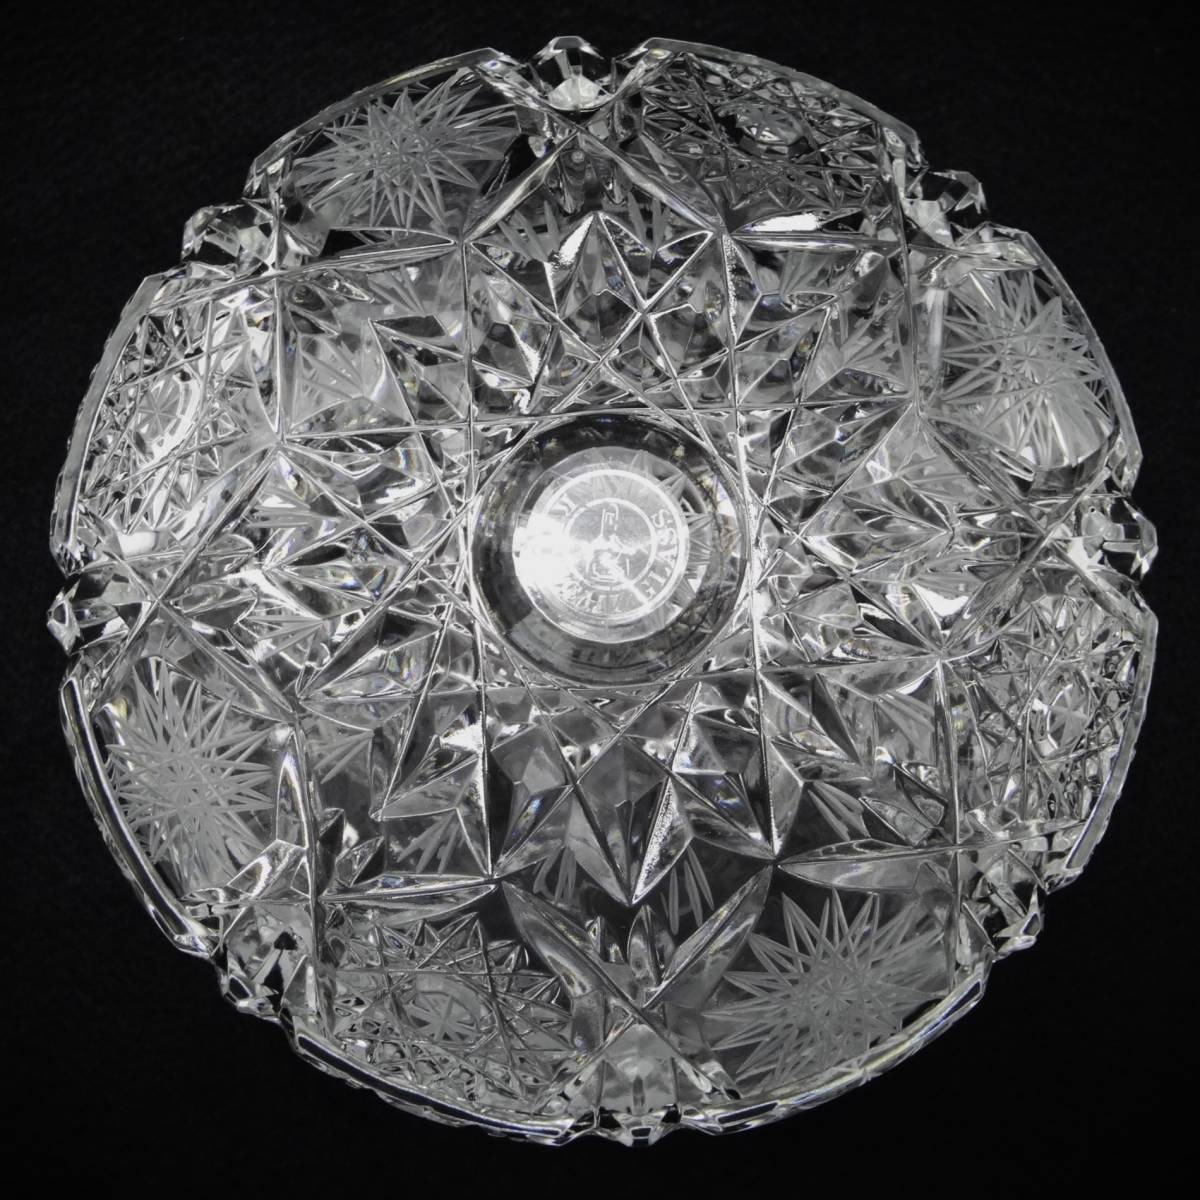 A34 美品 北一硝子 ボヘミアクリスタルガラス 蓋付き 菓子器 キャンディーポット カットガラス 小物入れの画像5